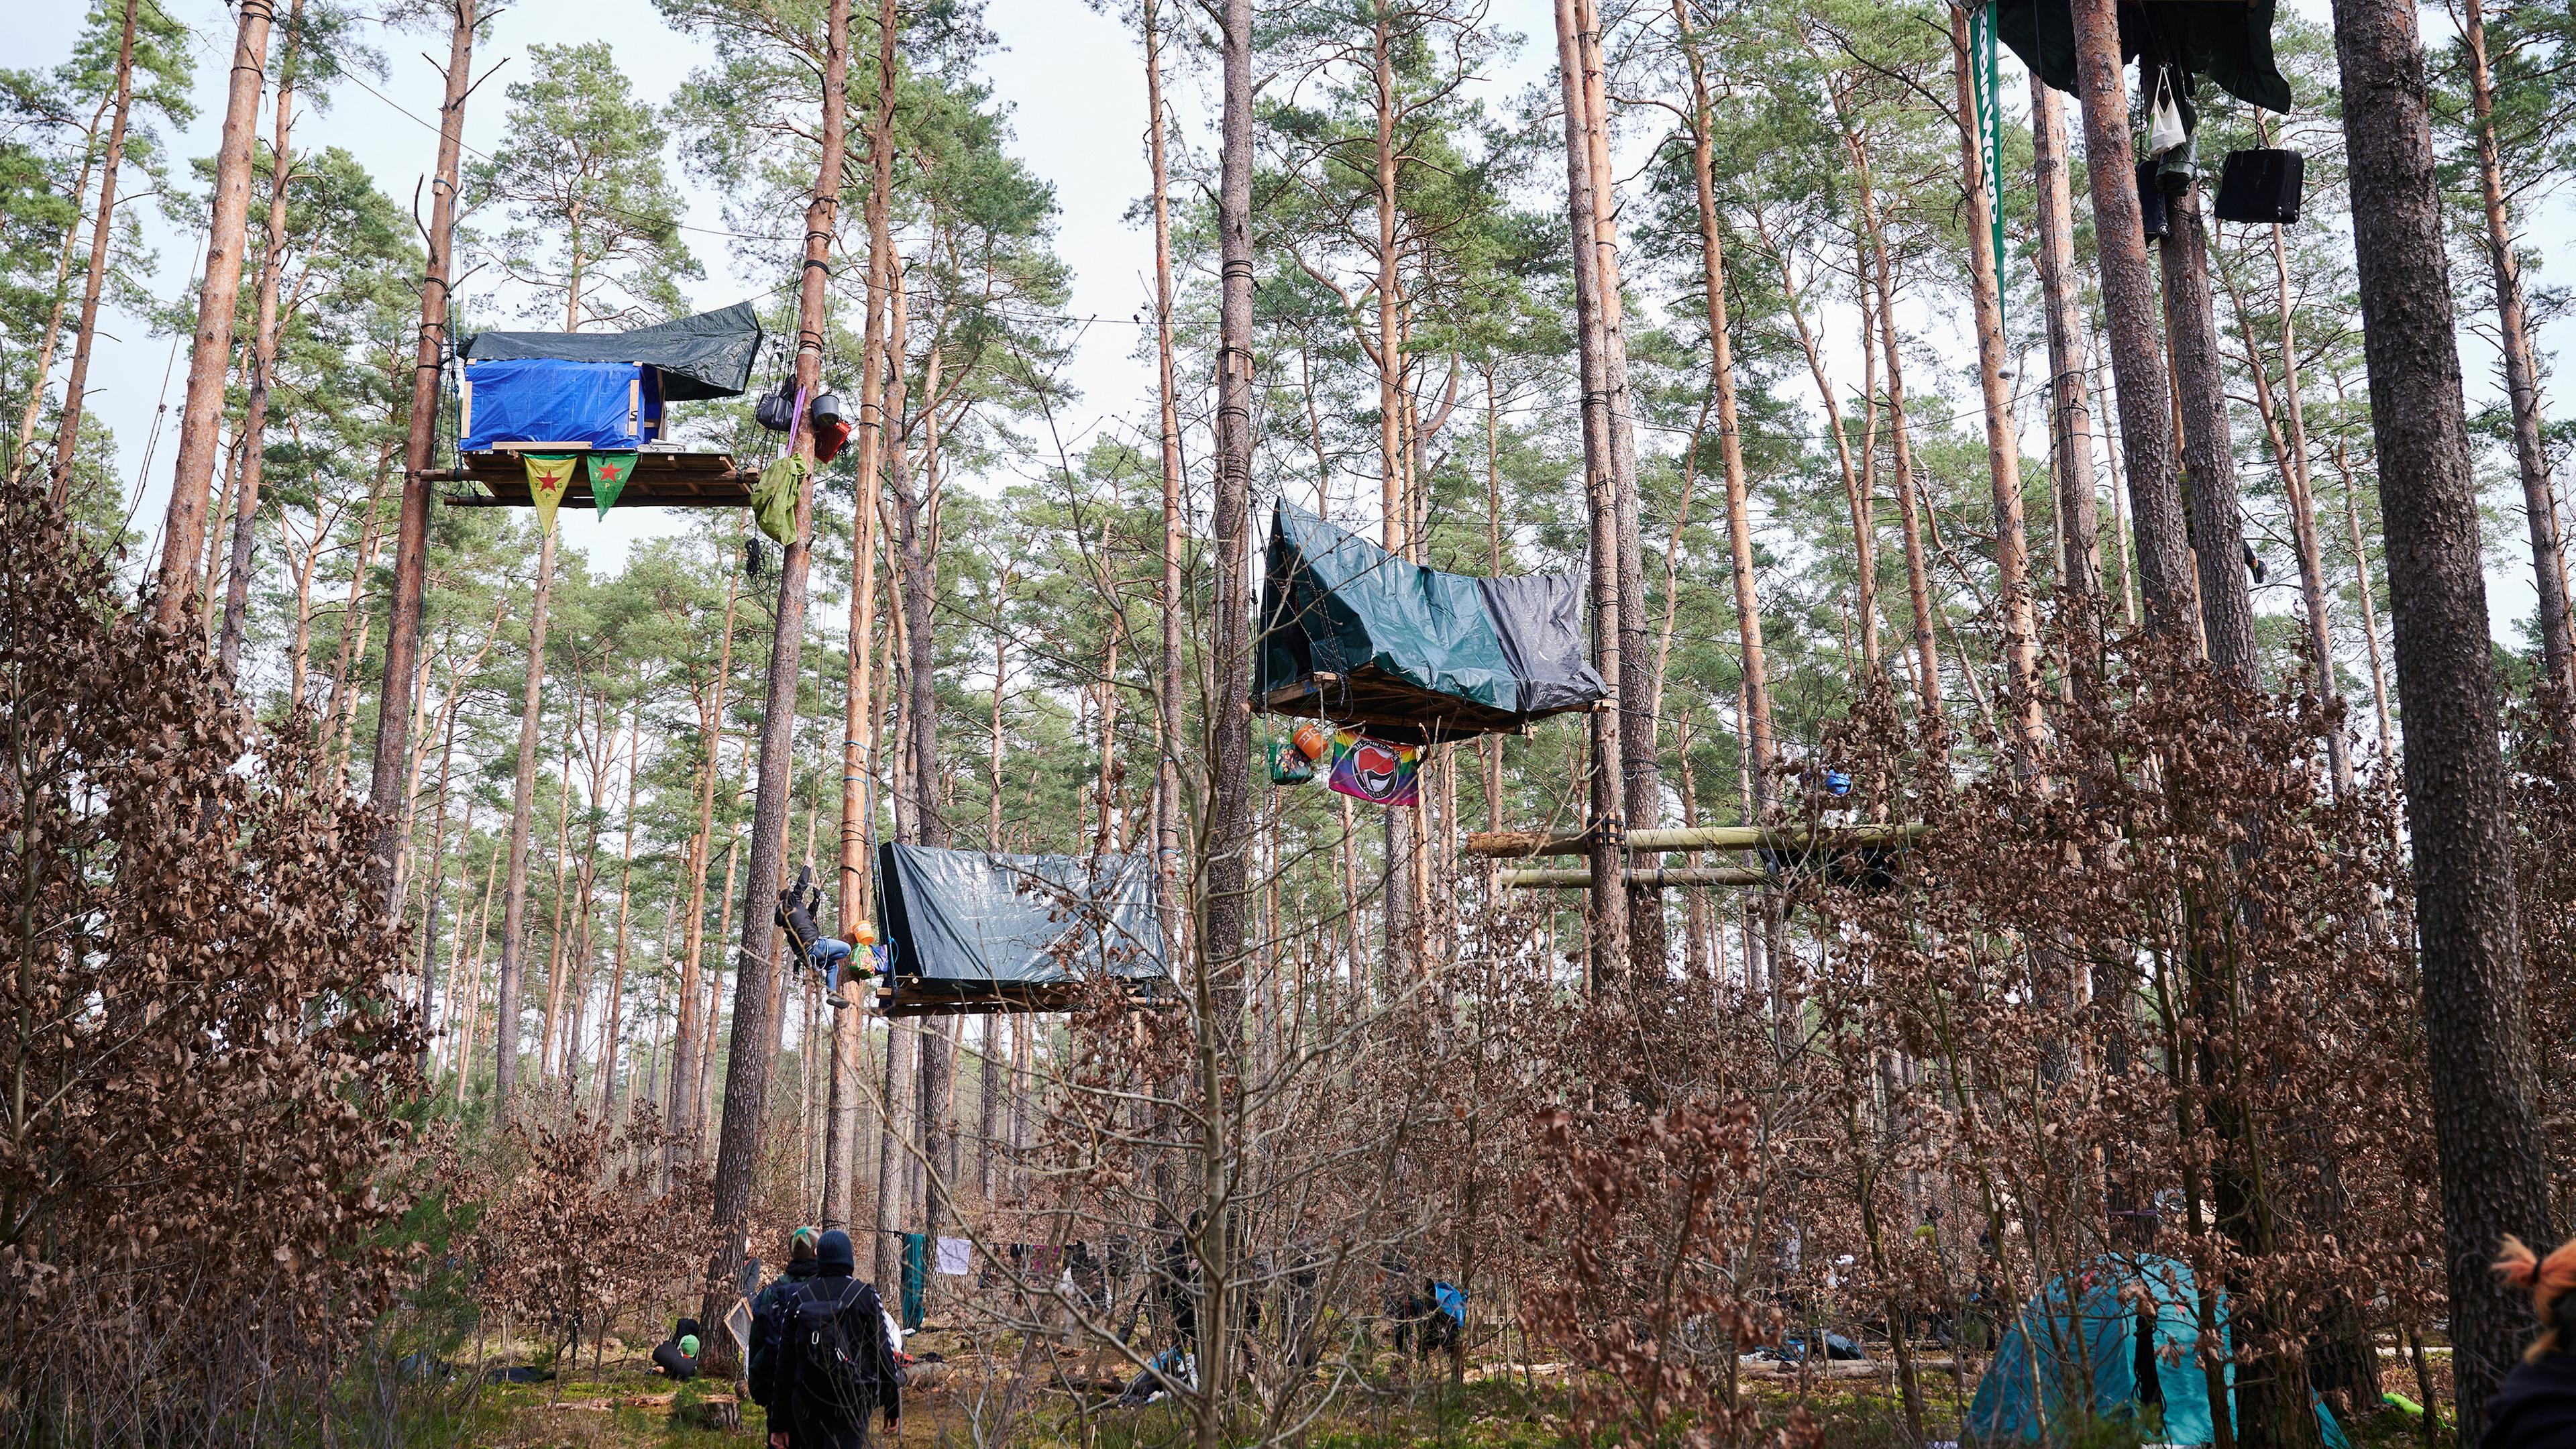  Baumhäuser hängen als Protestaktion in den Bäumen.